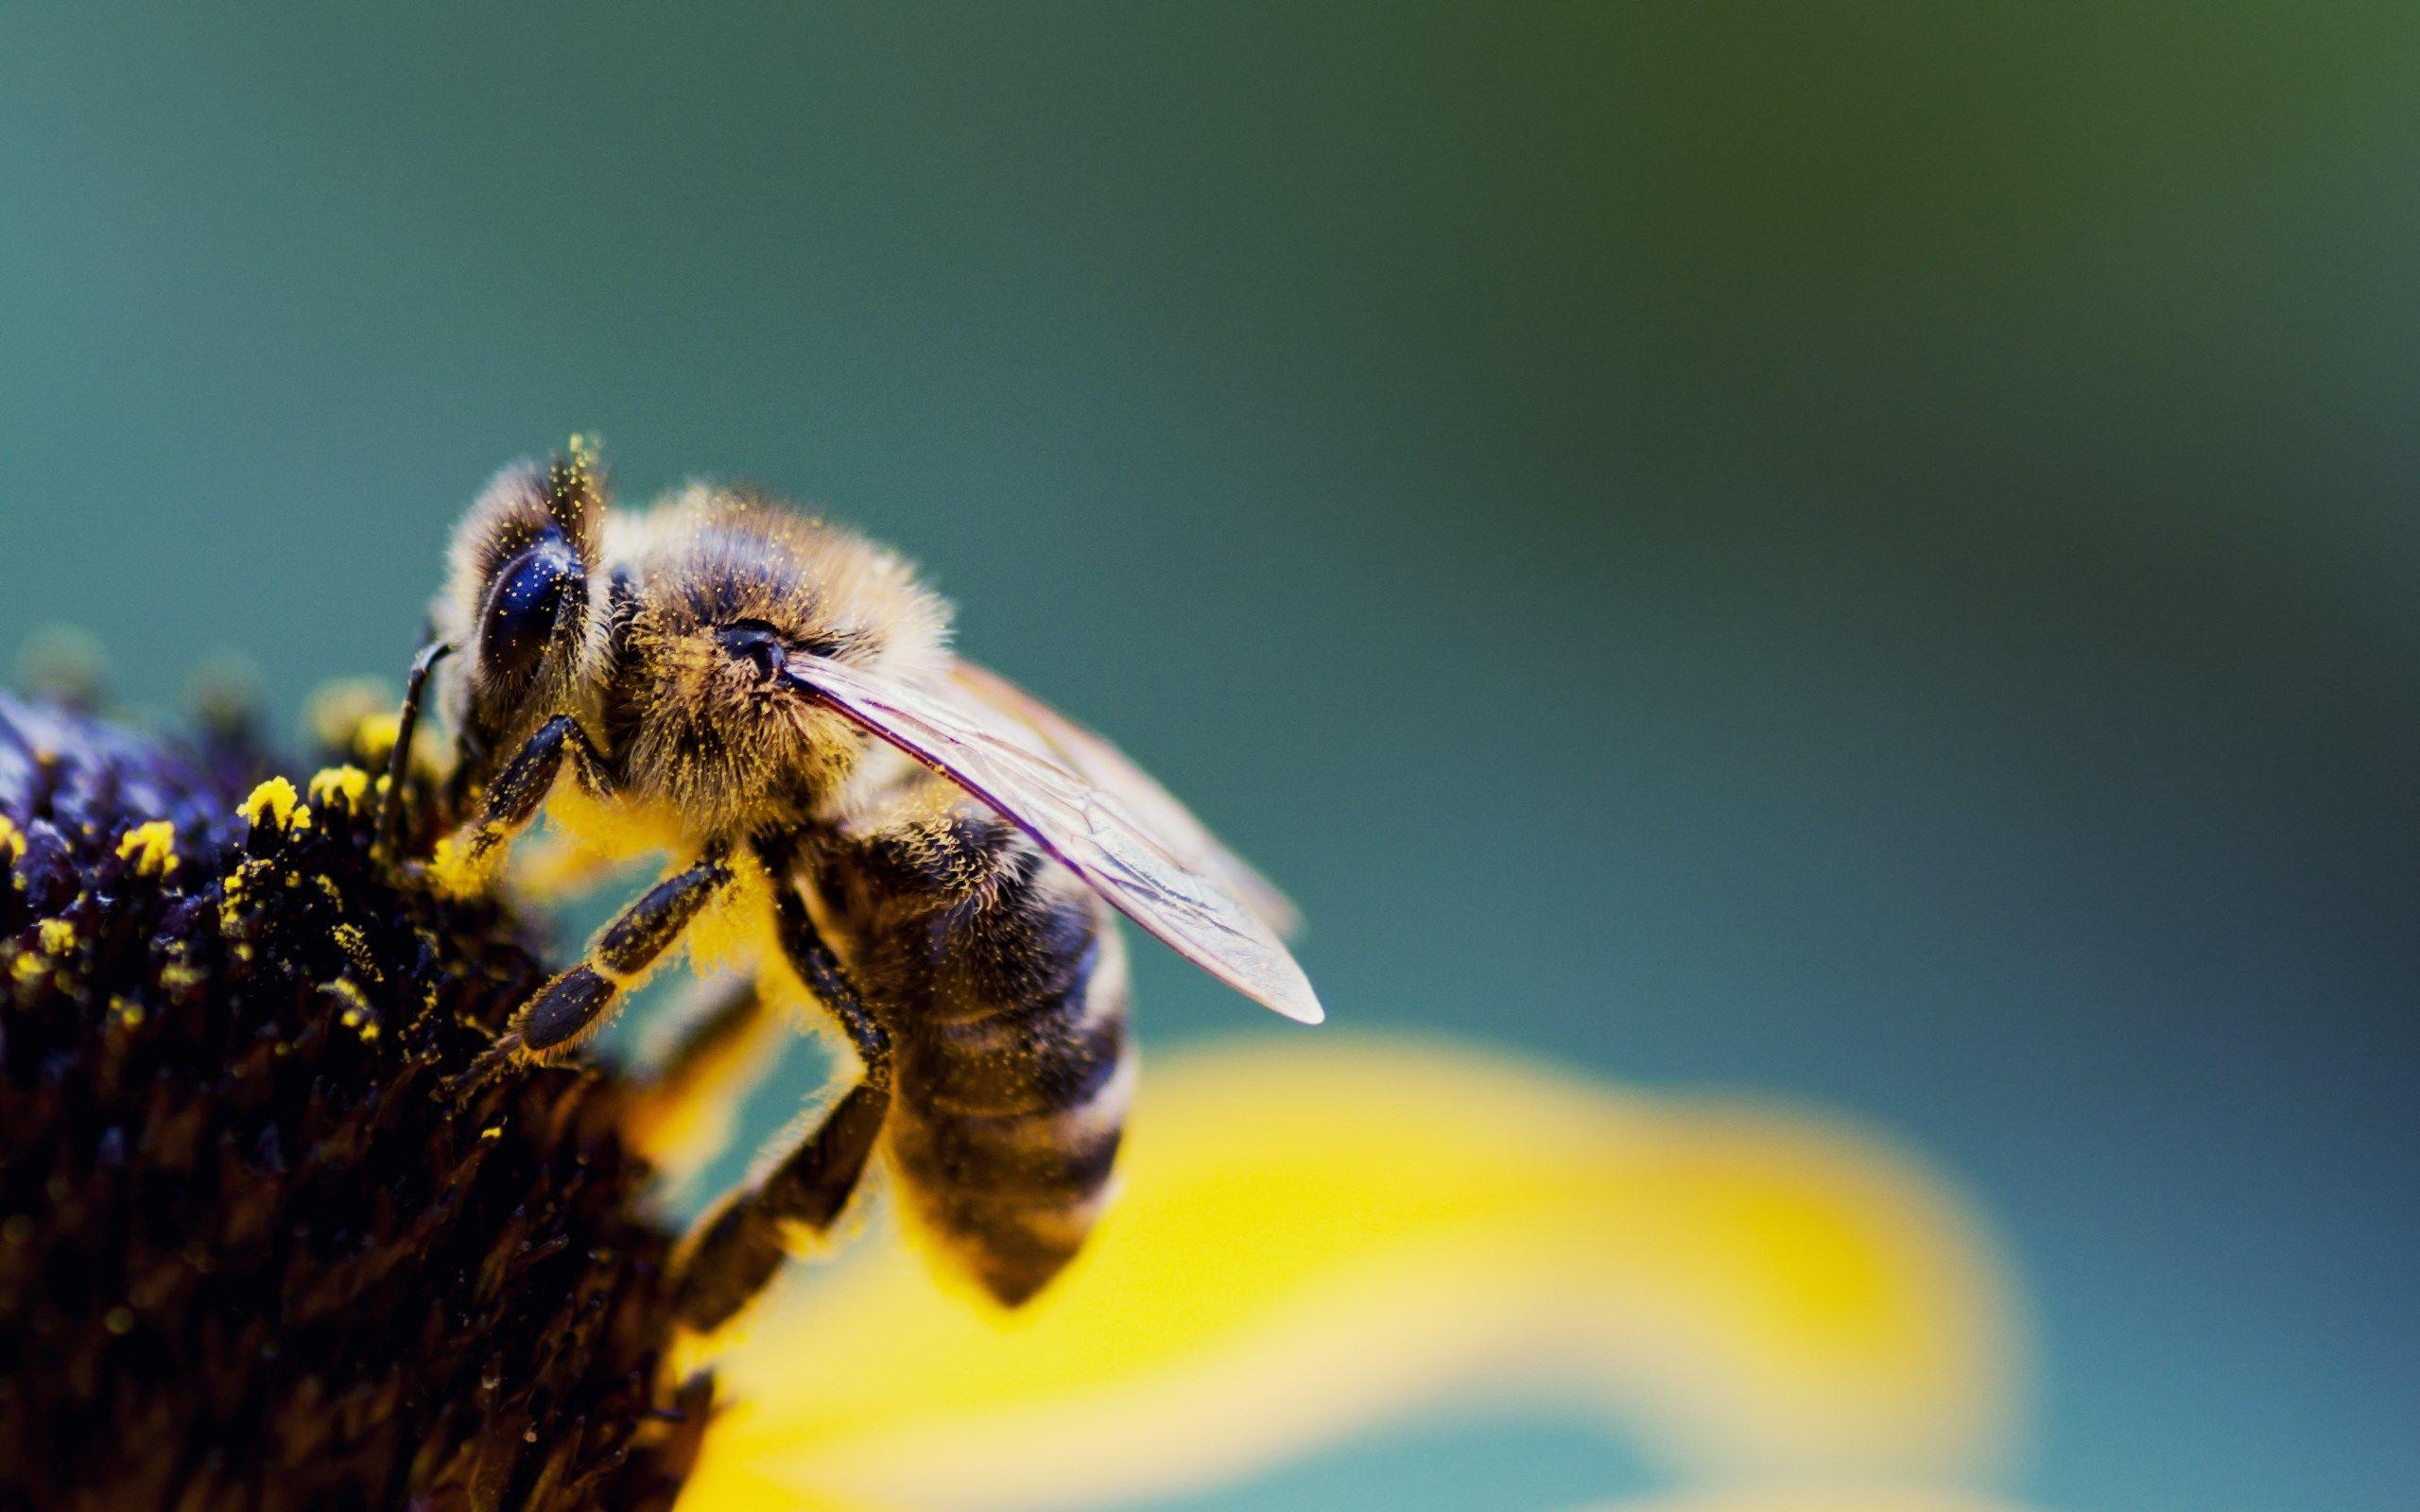 Cute Bee Desktop Wallpapers - Top Free Cute Bee Desktop Backgrounds